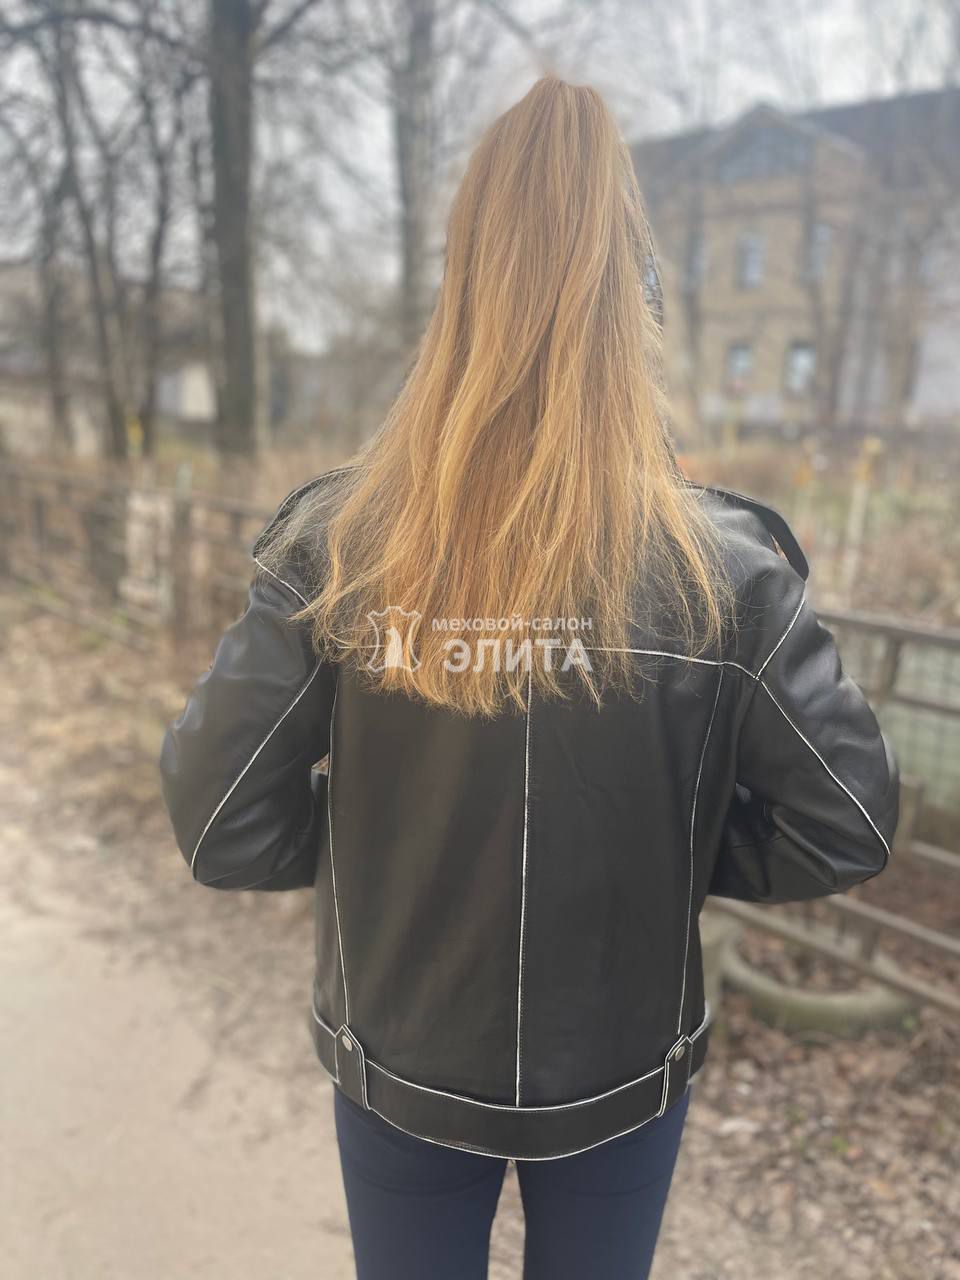 Кожаная куртка м. FZ2045 р-р 46-52, цена 26500 рублей в интернет-магазине кожи и меха ЭЛИТА. Вид 2